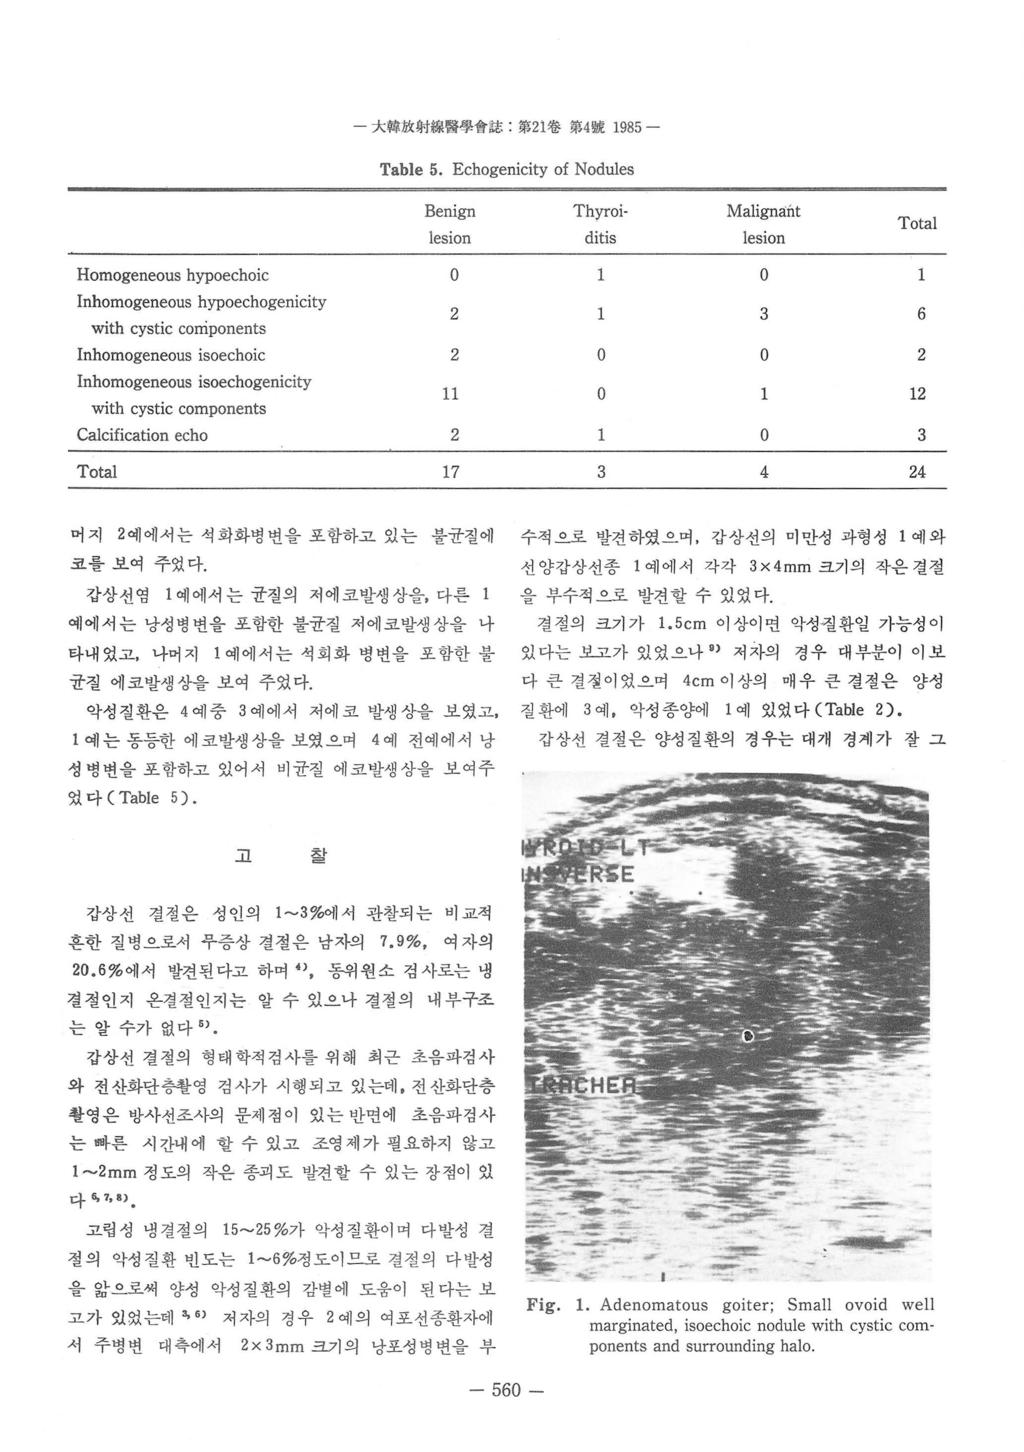 - 大햄放射線뽑學 f't 誌 : 第 2 1 卷第 4 號 1985 - Table 5.